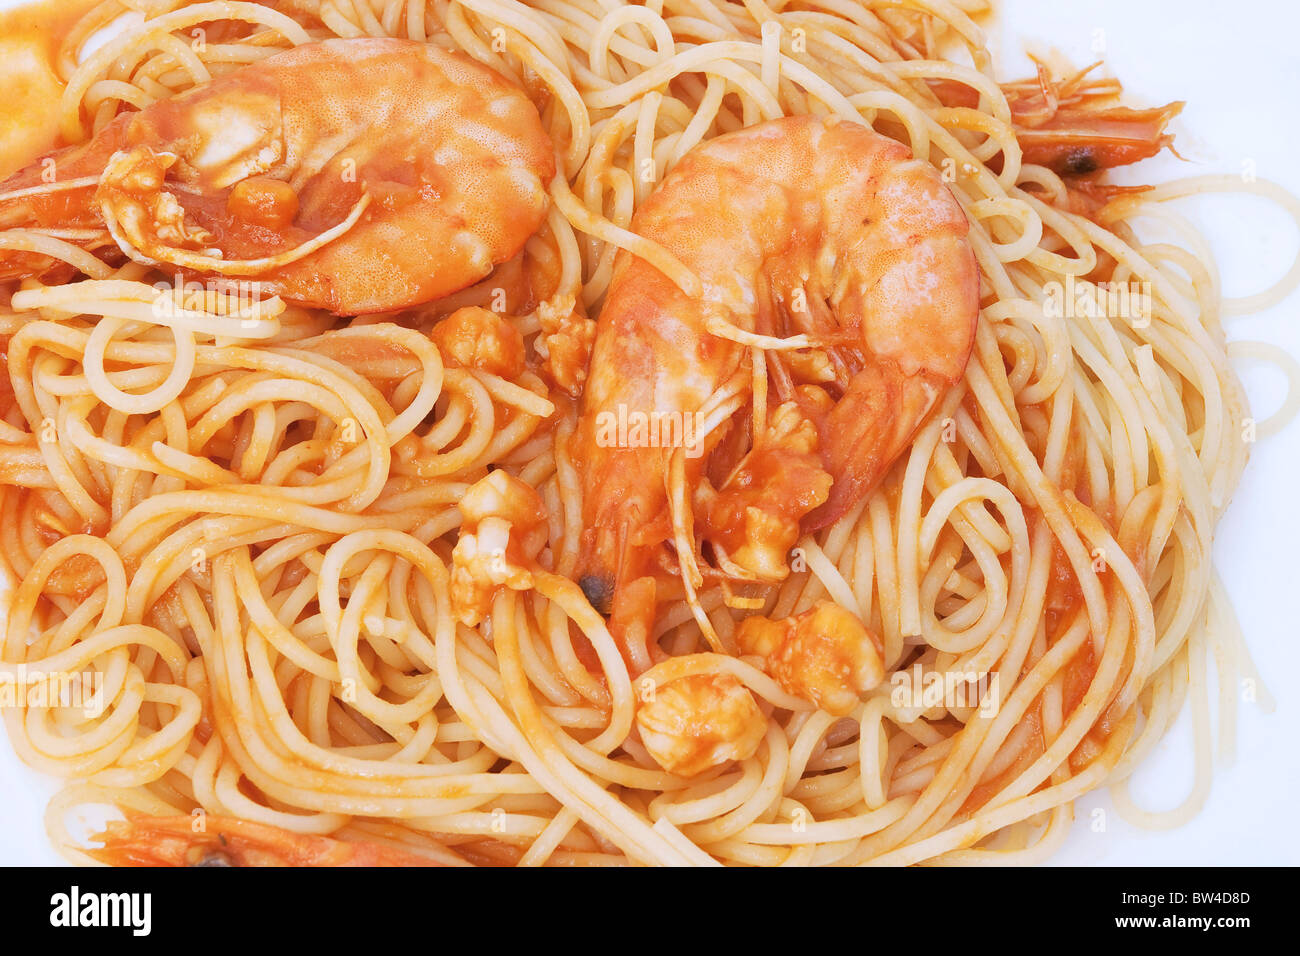 Détail de spaghetti aux crevettes et sauce tomate isolé sur fond blanc Banque D'Images